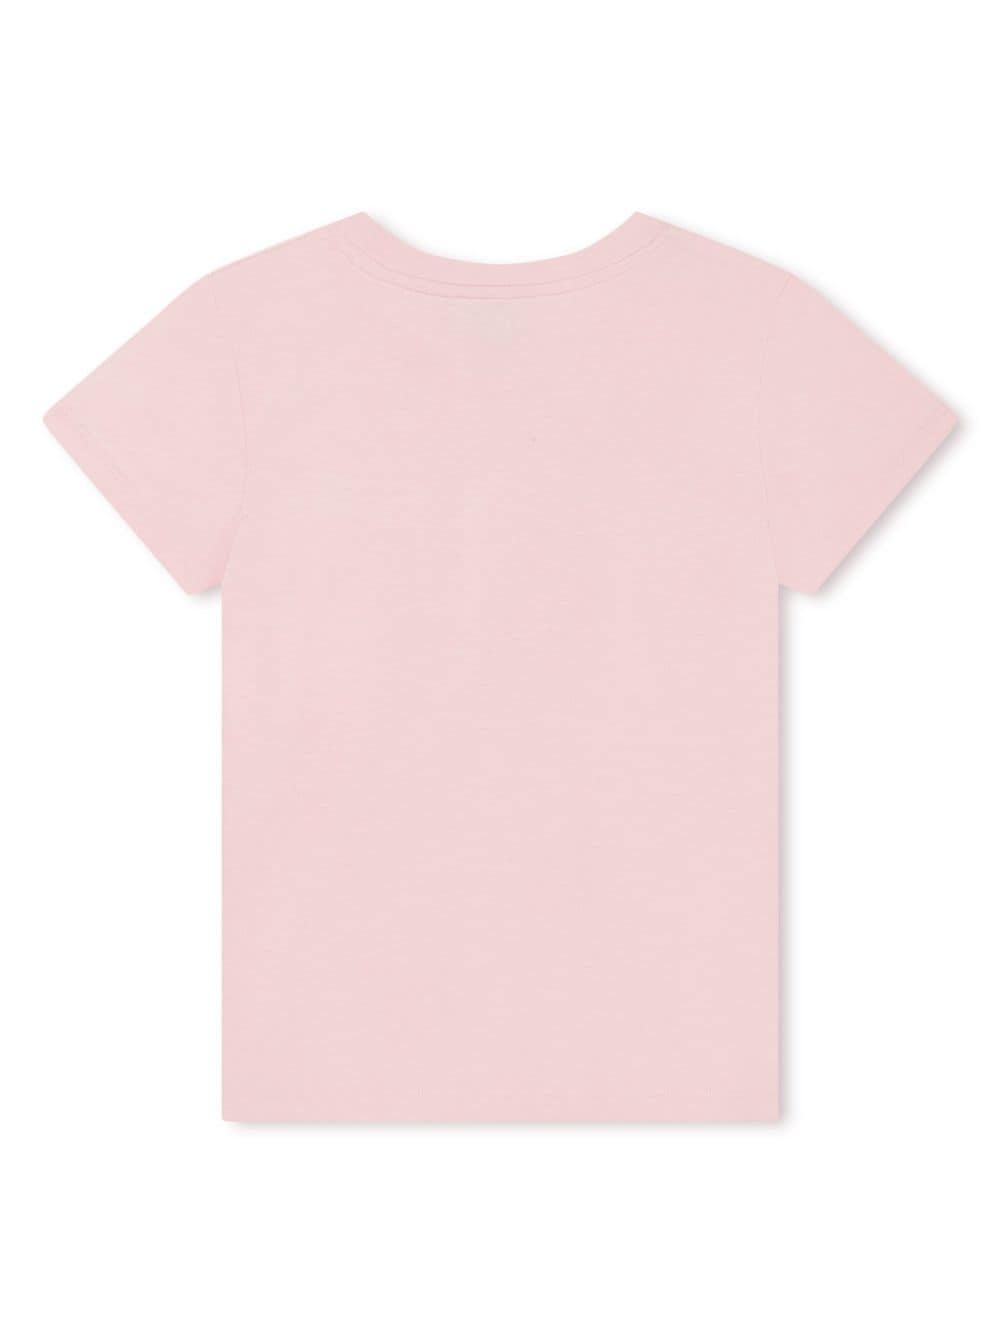 T-shirt rosa per bambina con logo oro